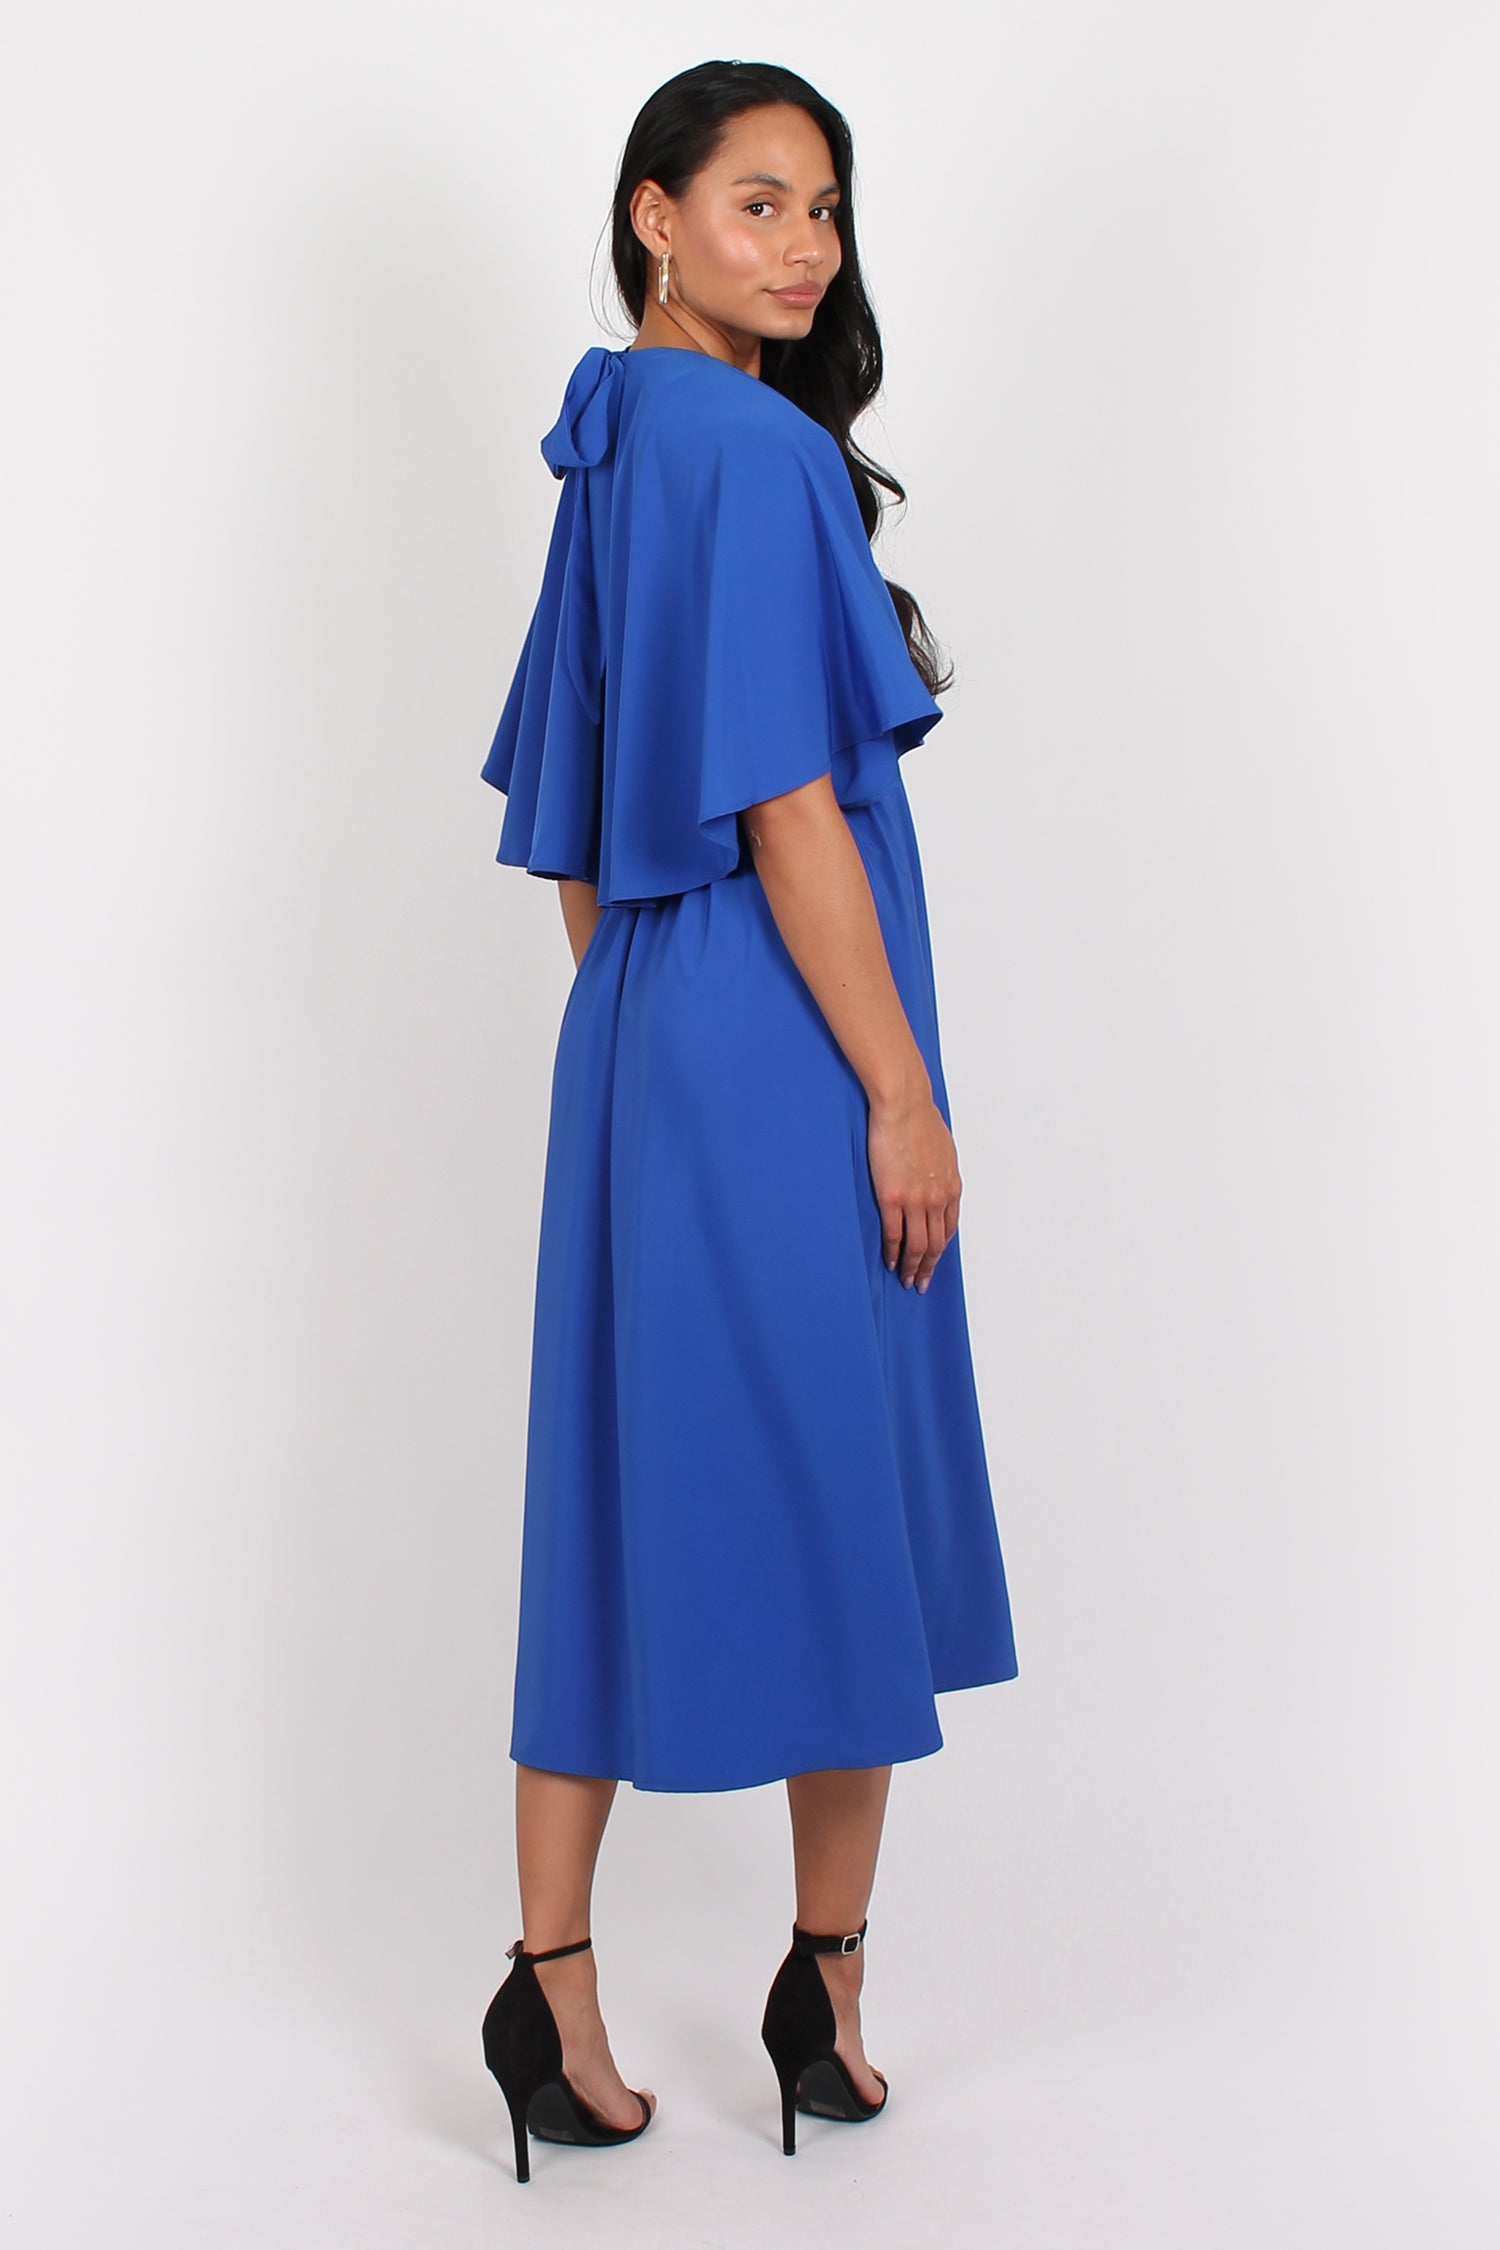 Lacy Halter Neck Cape Midi Dress Blue